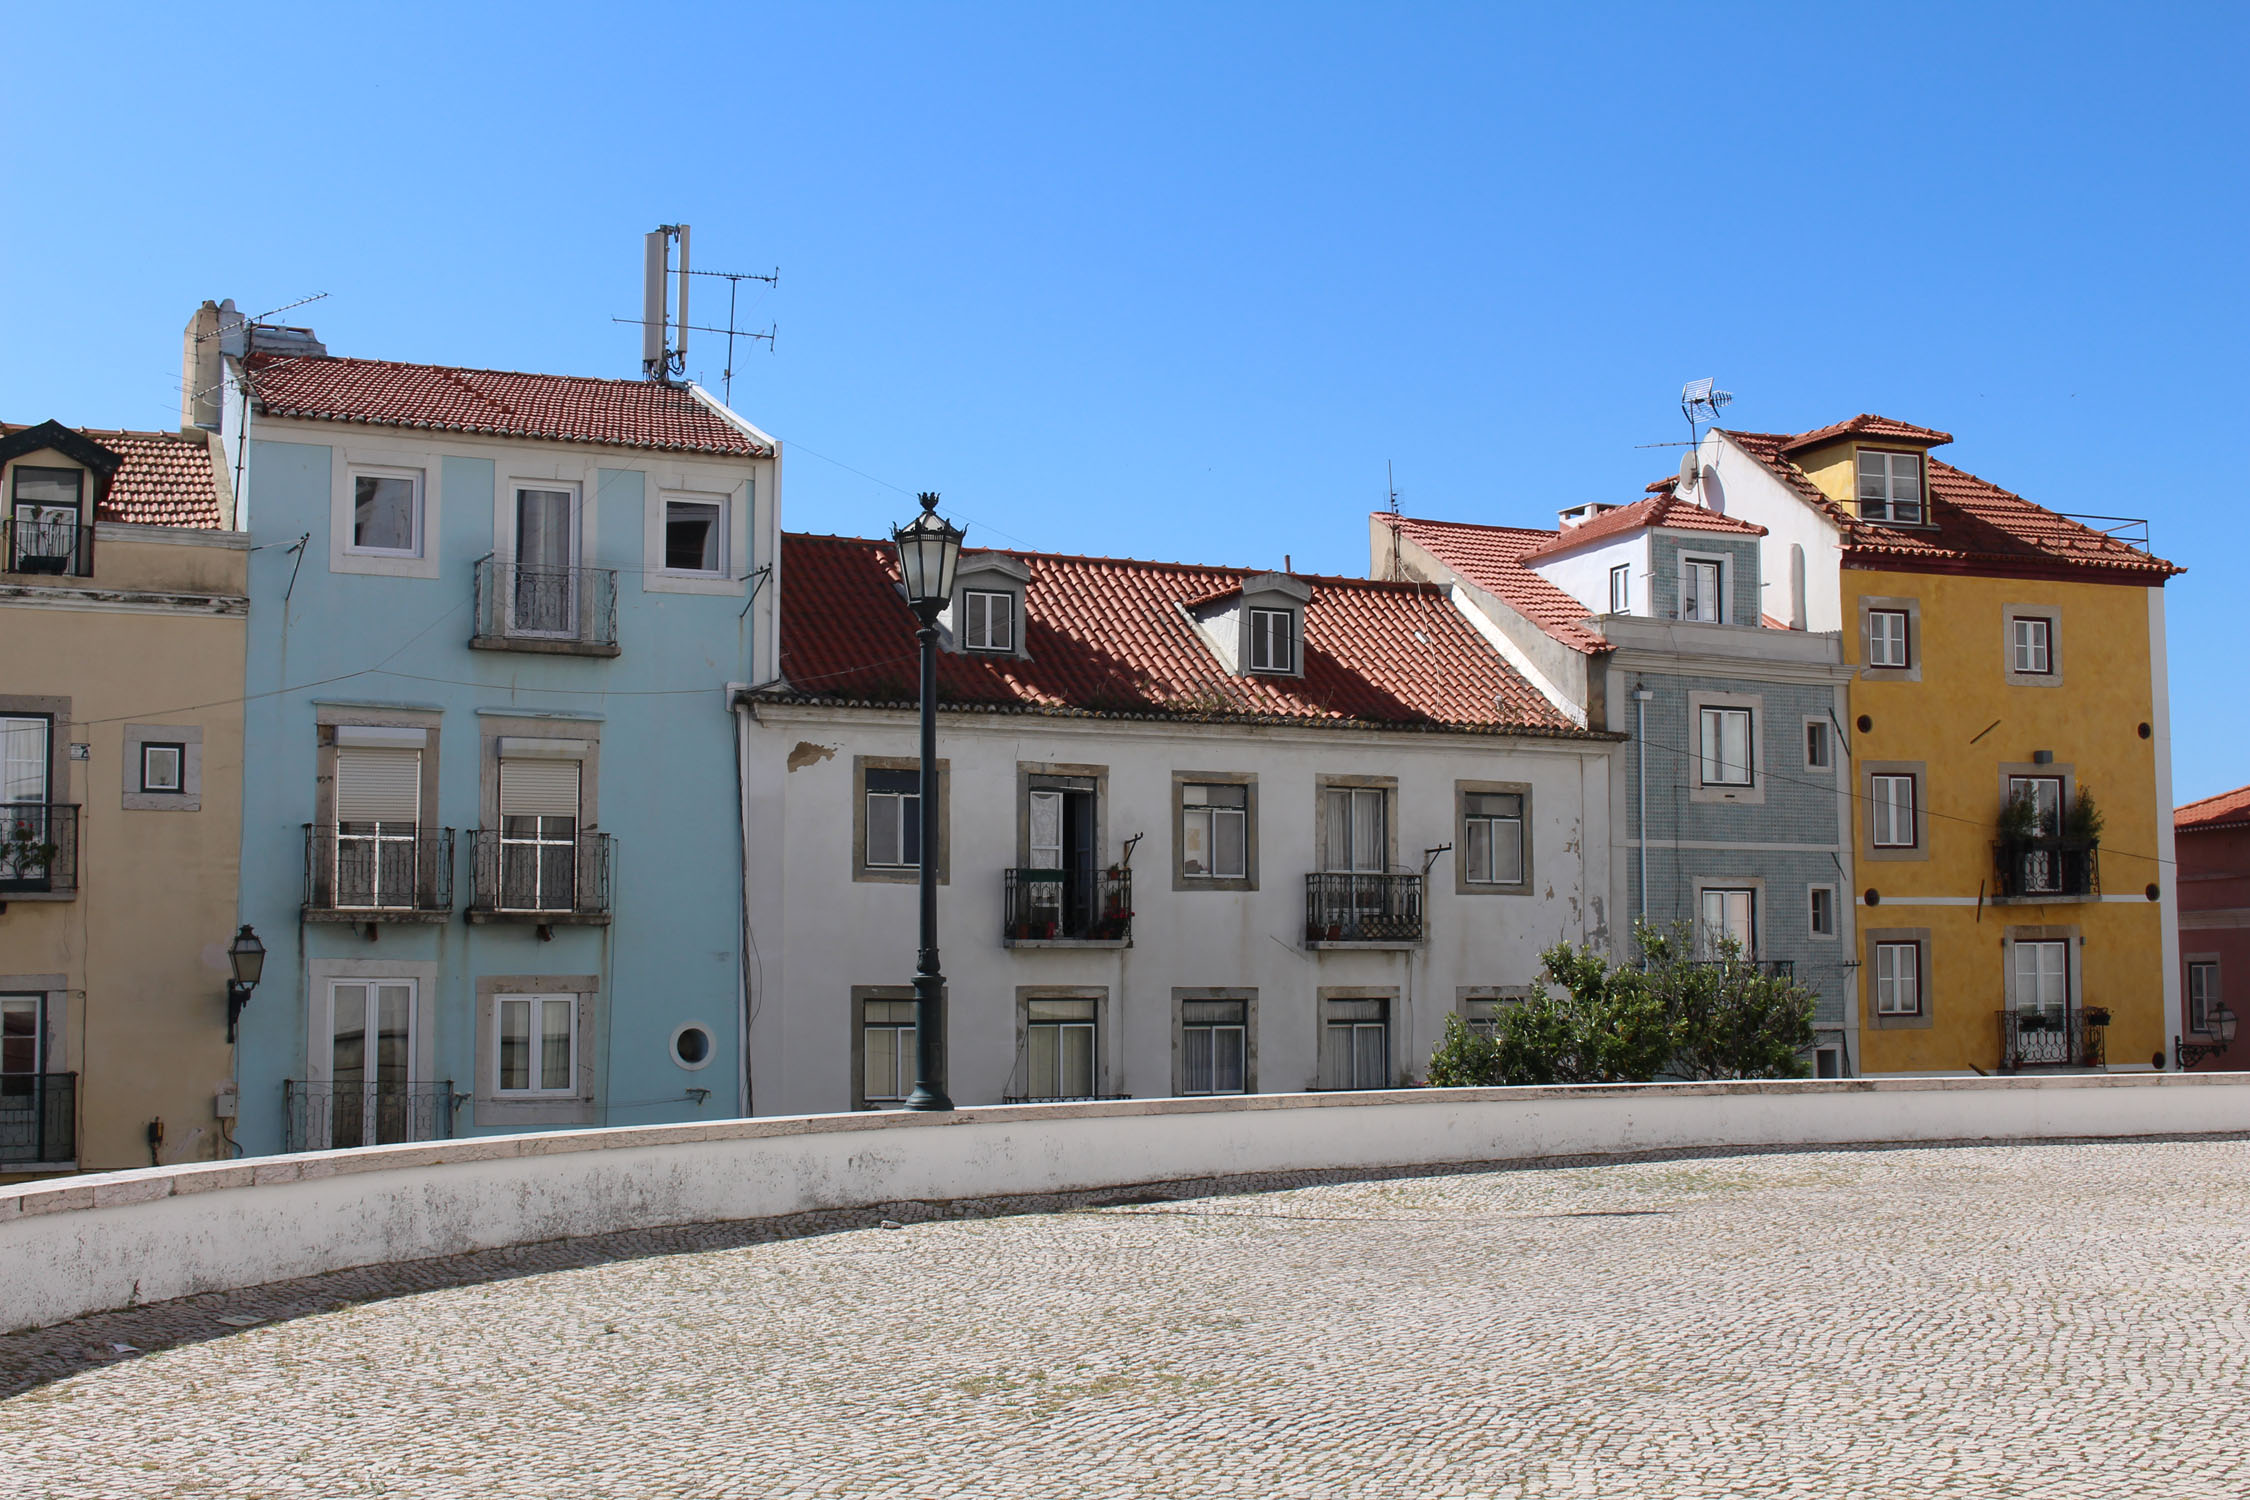 Lisbonne, quartier São Vicente